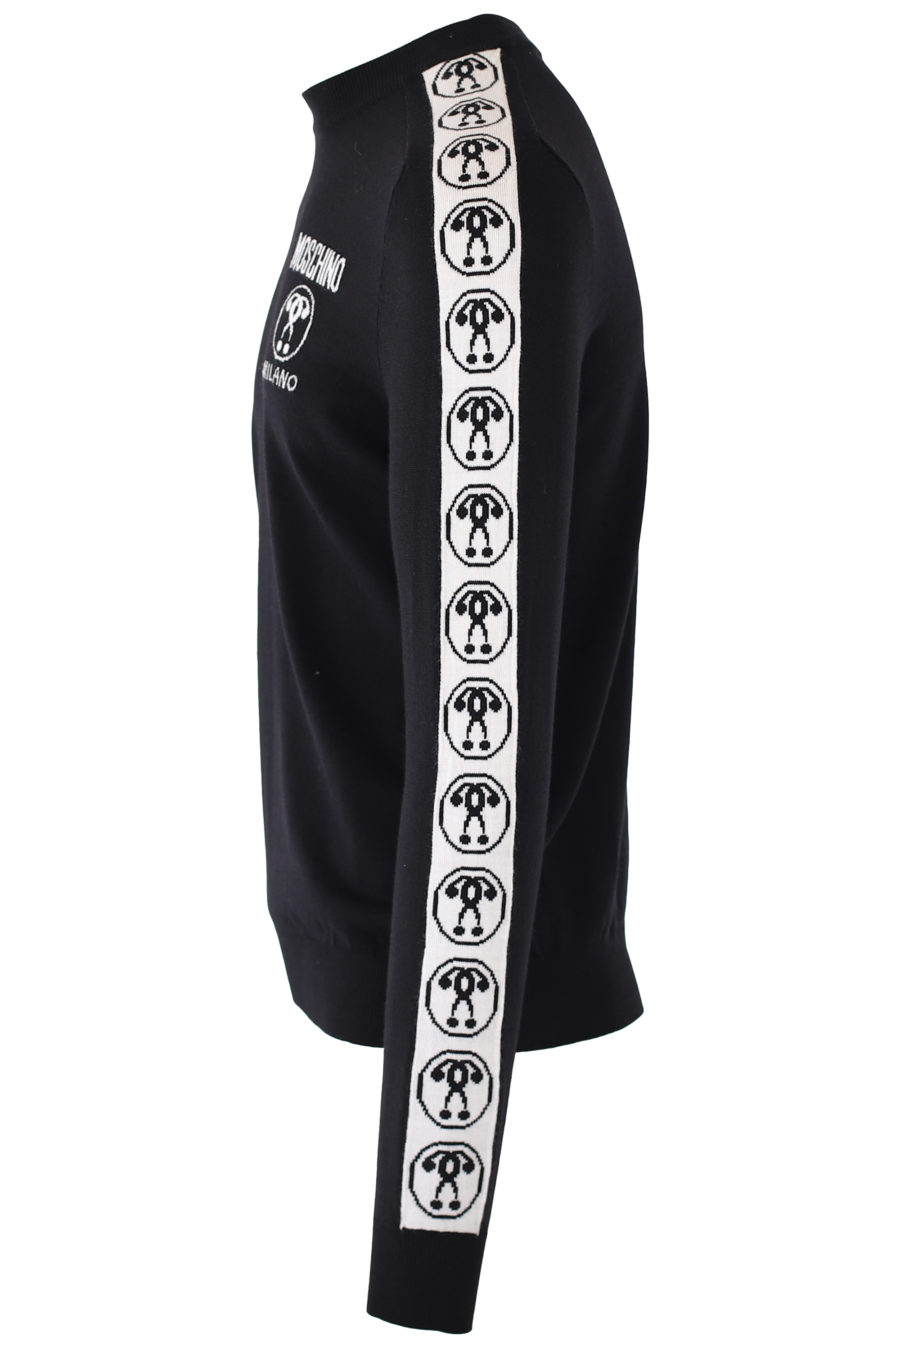 Jersey negro con logo doble pregunta y cinta en mangas - IMG 9298